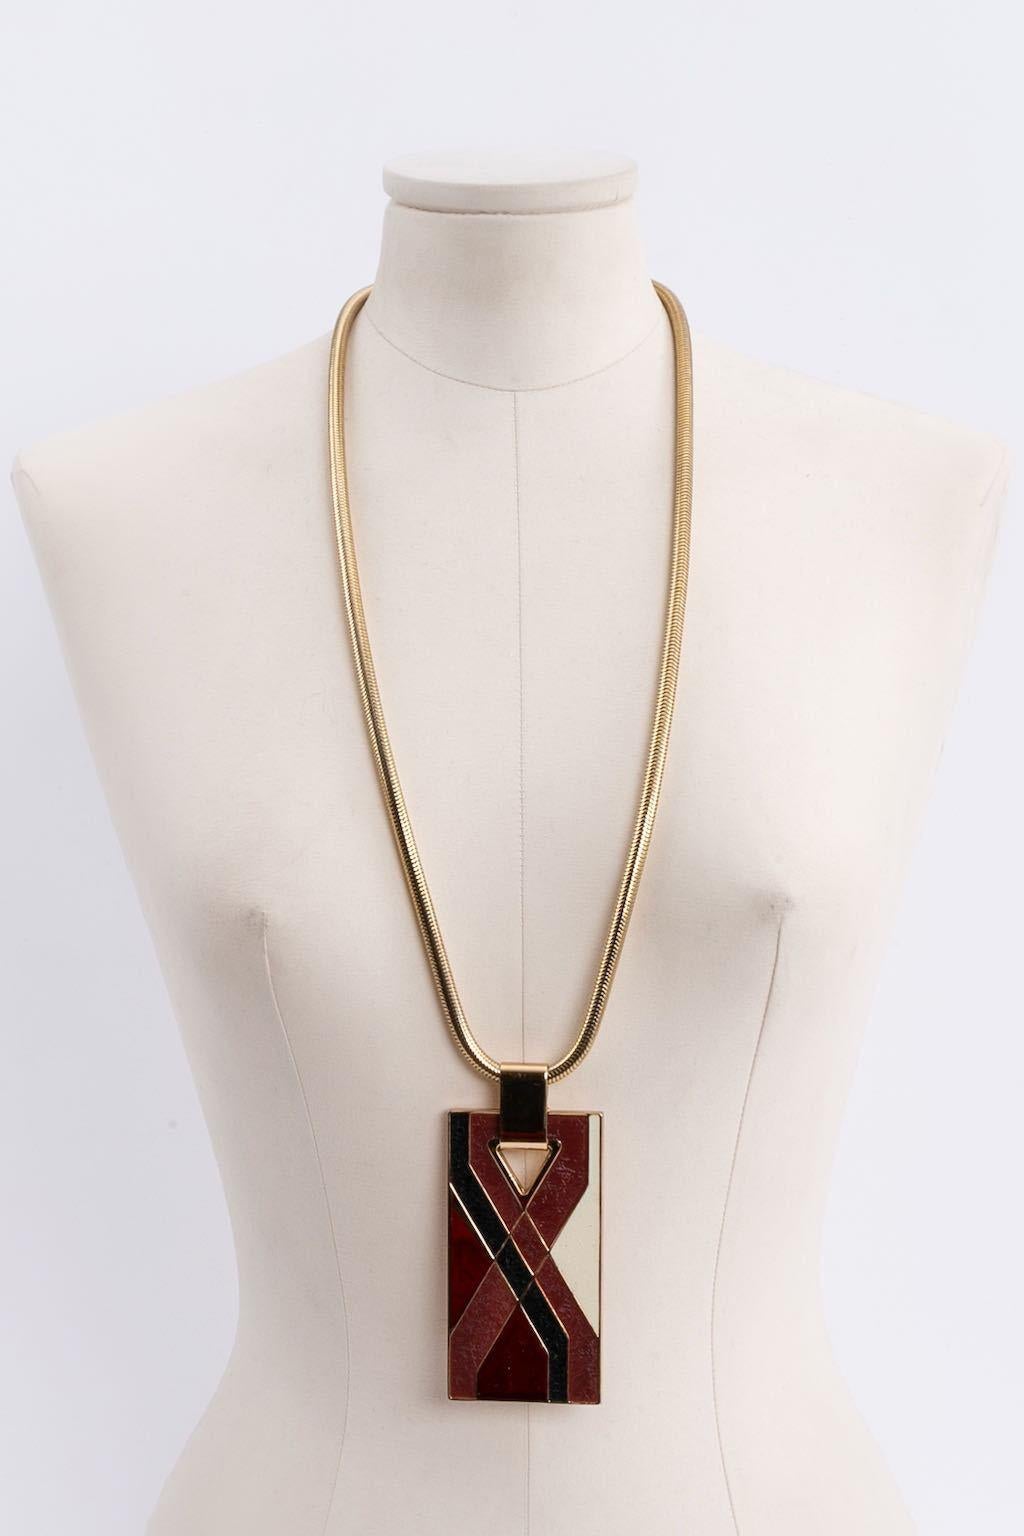 Lanvin - Collar de metal dorado con colgante.

Más información: 
Dimensiones: Longitud: 78 cm (30,7